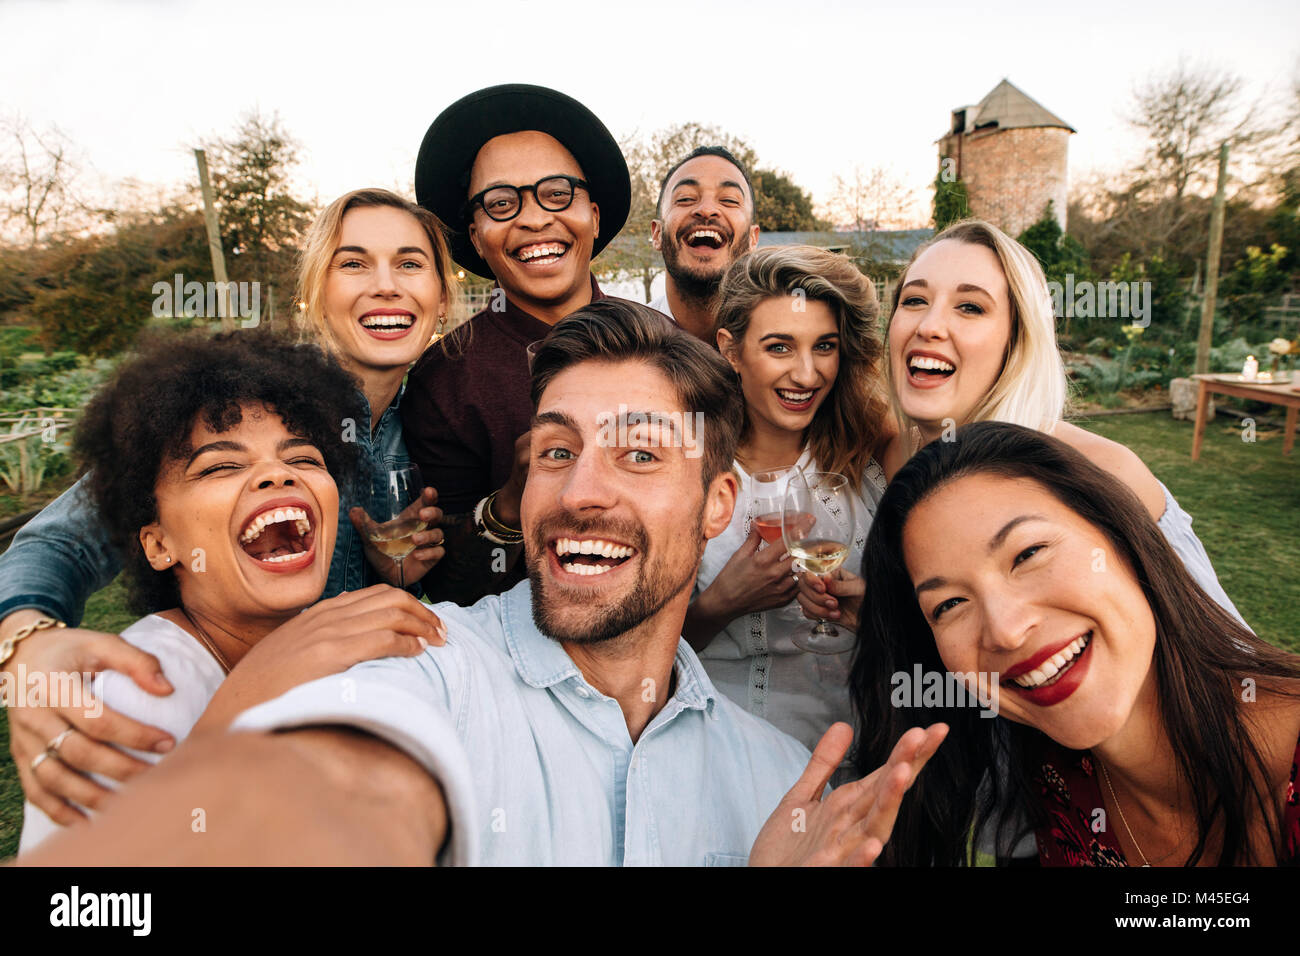 Freunde außerhalb der Gruppe selfie und lächelnd Chillen. Lachende junge Menschen gemeinsam im Freien und unter selfie. Stockfoto